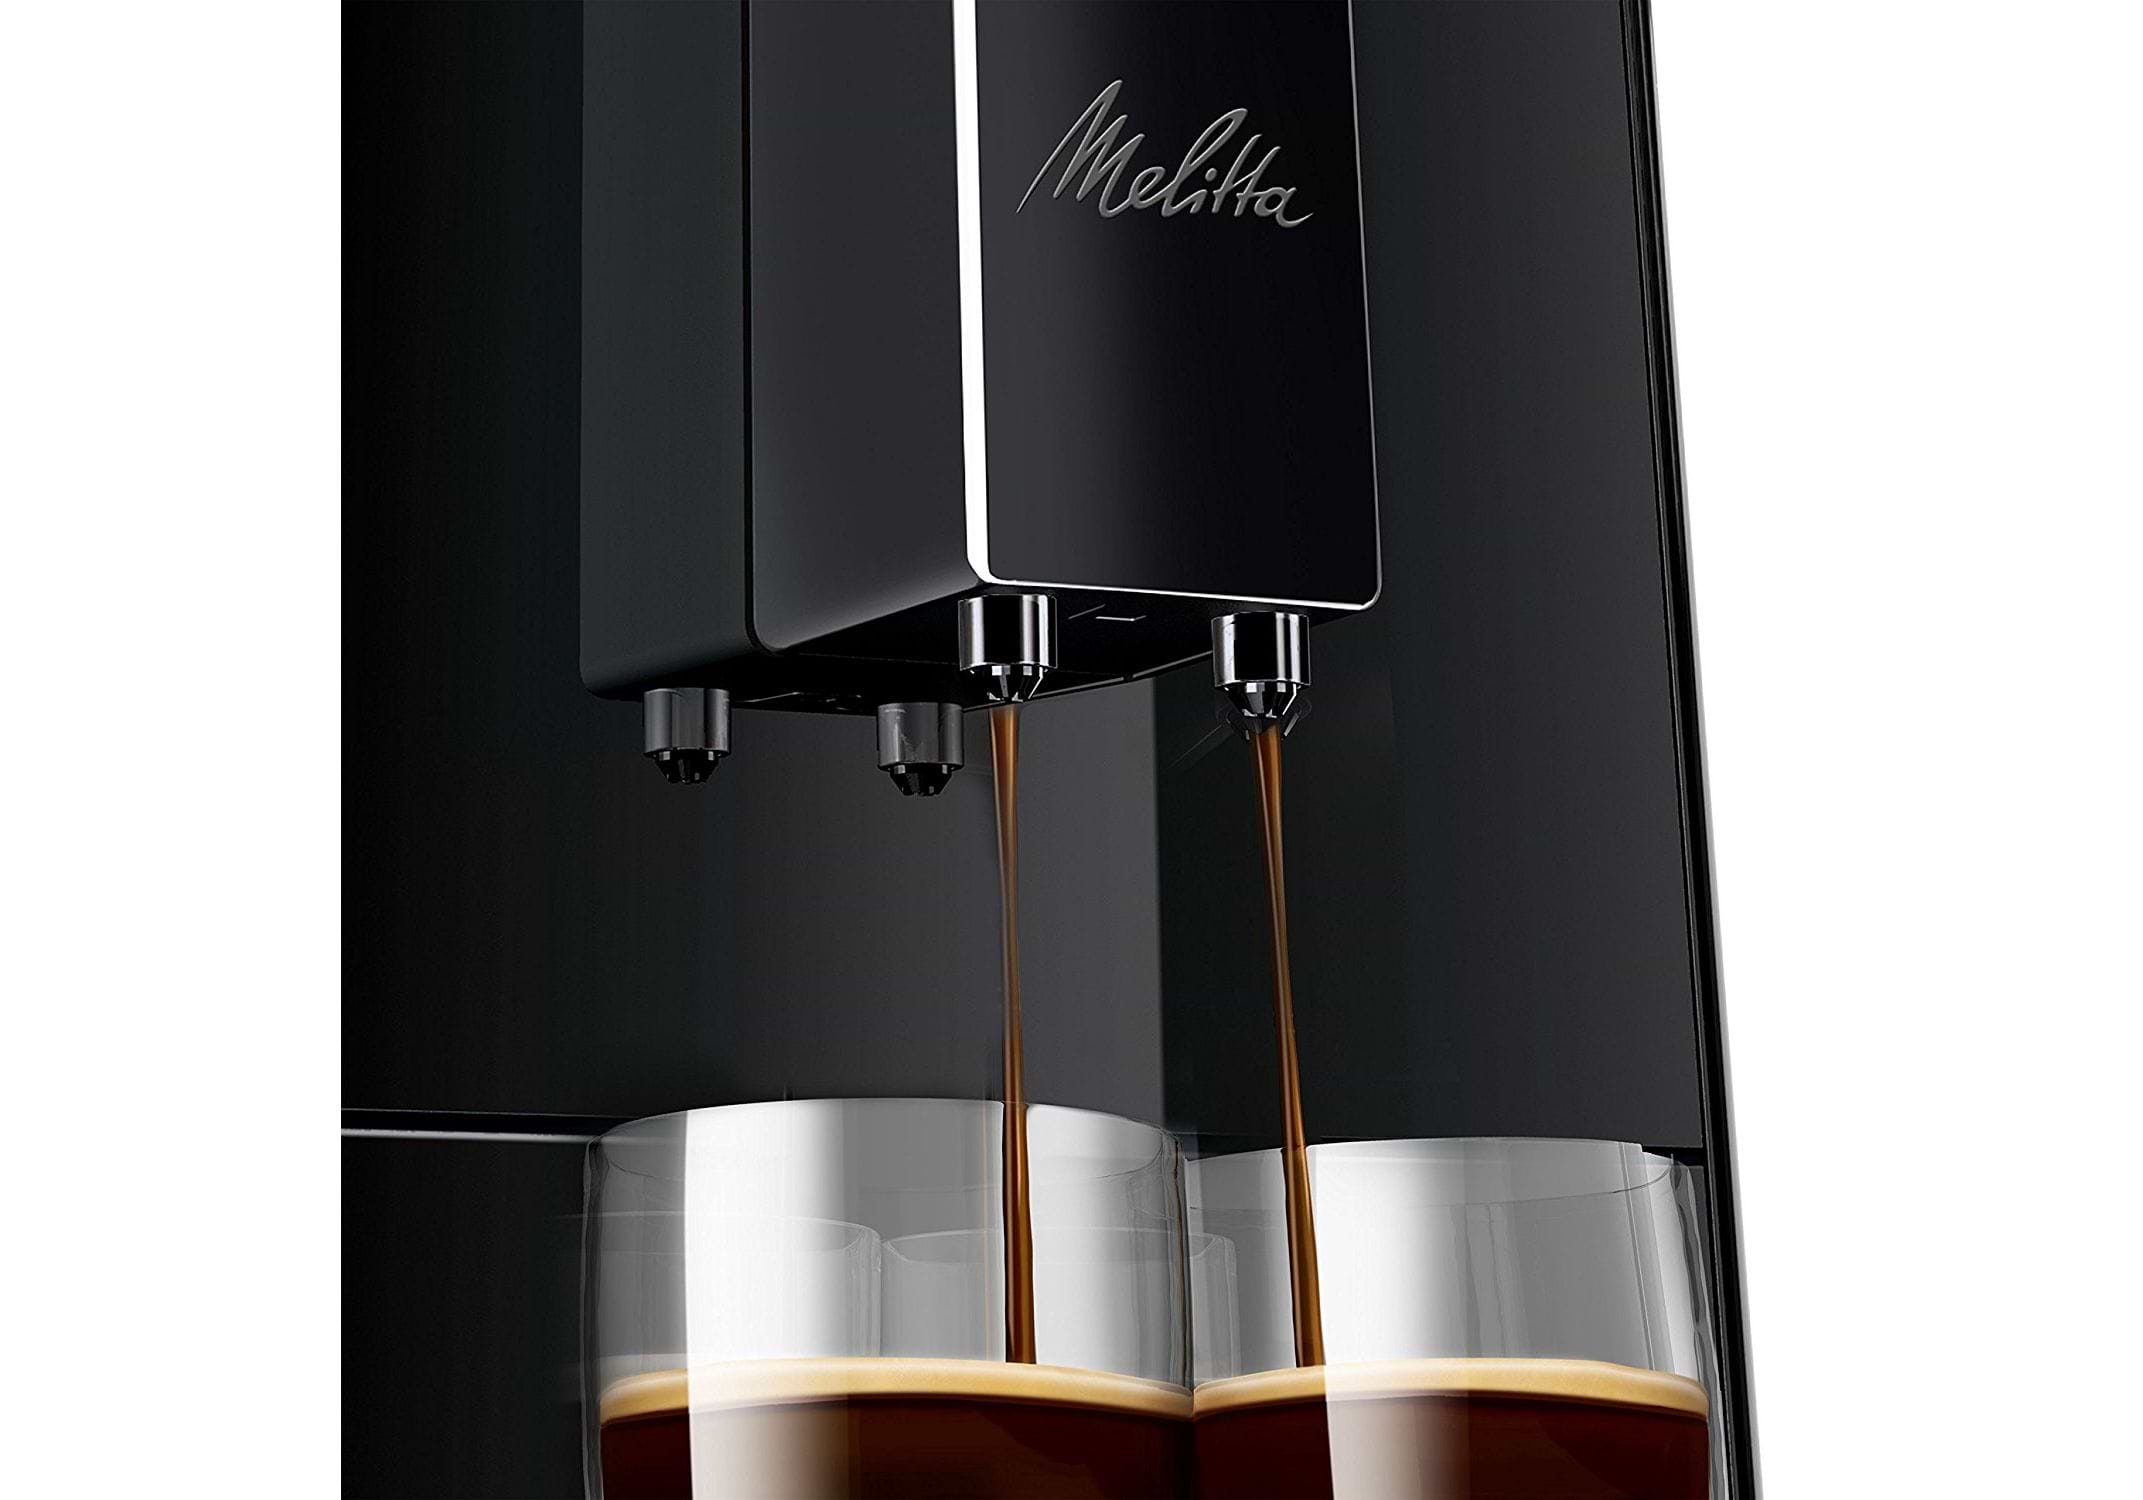 מכונת קפה מליטה סולו צבע פיור בלאק Melitta Solo Pure Black אחריות יבואן רשמי